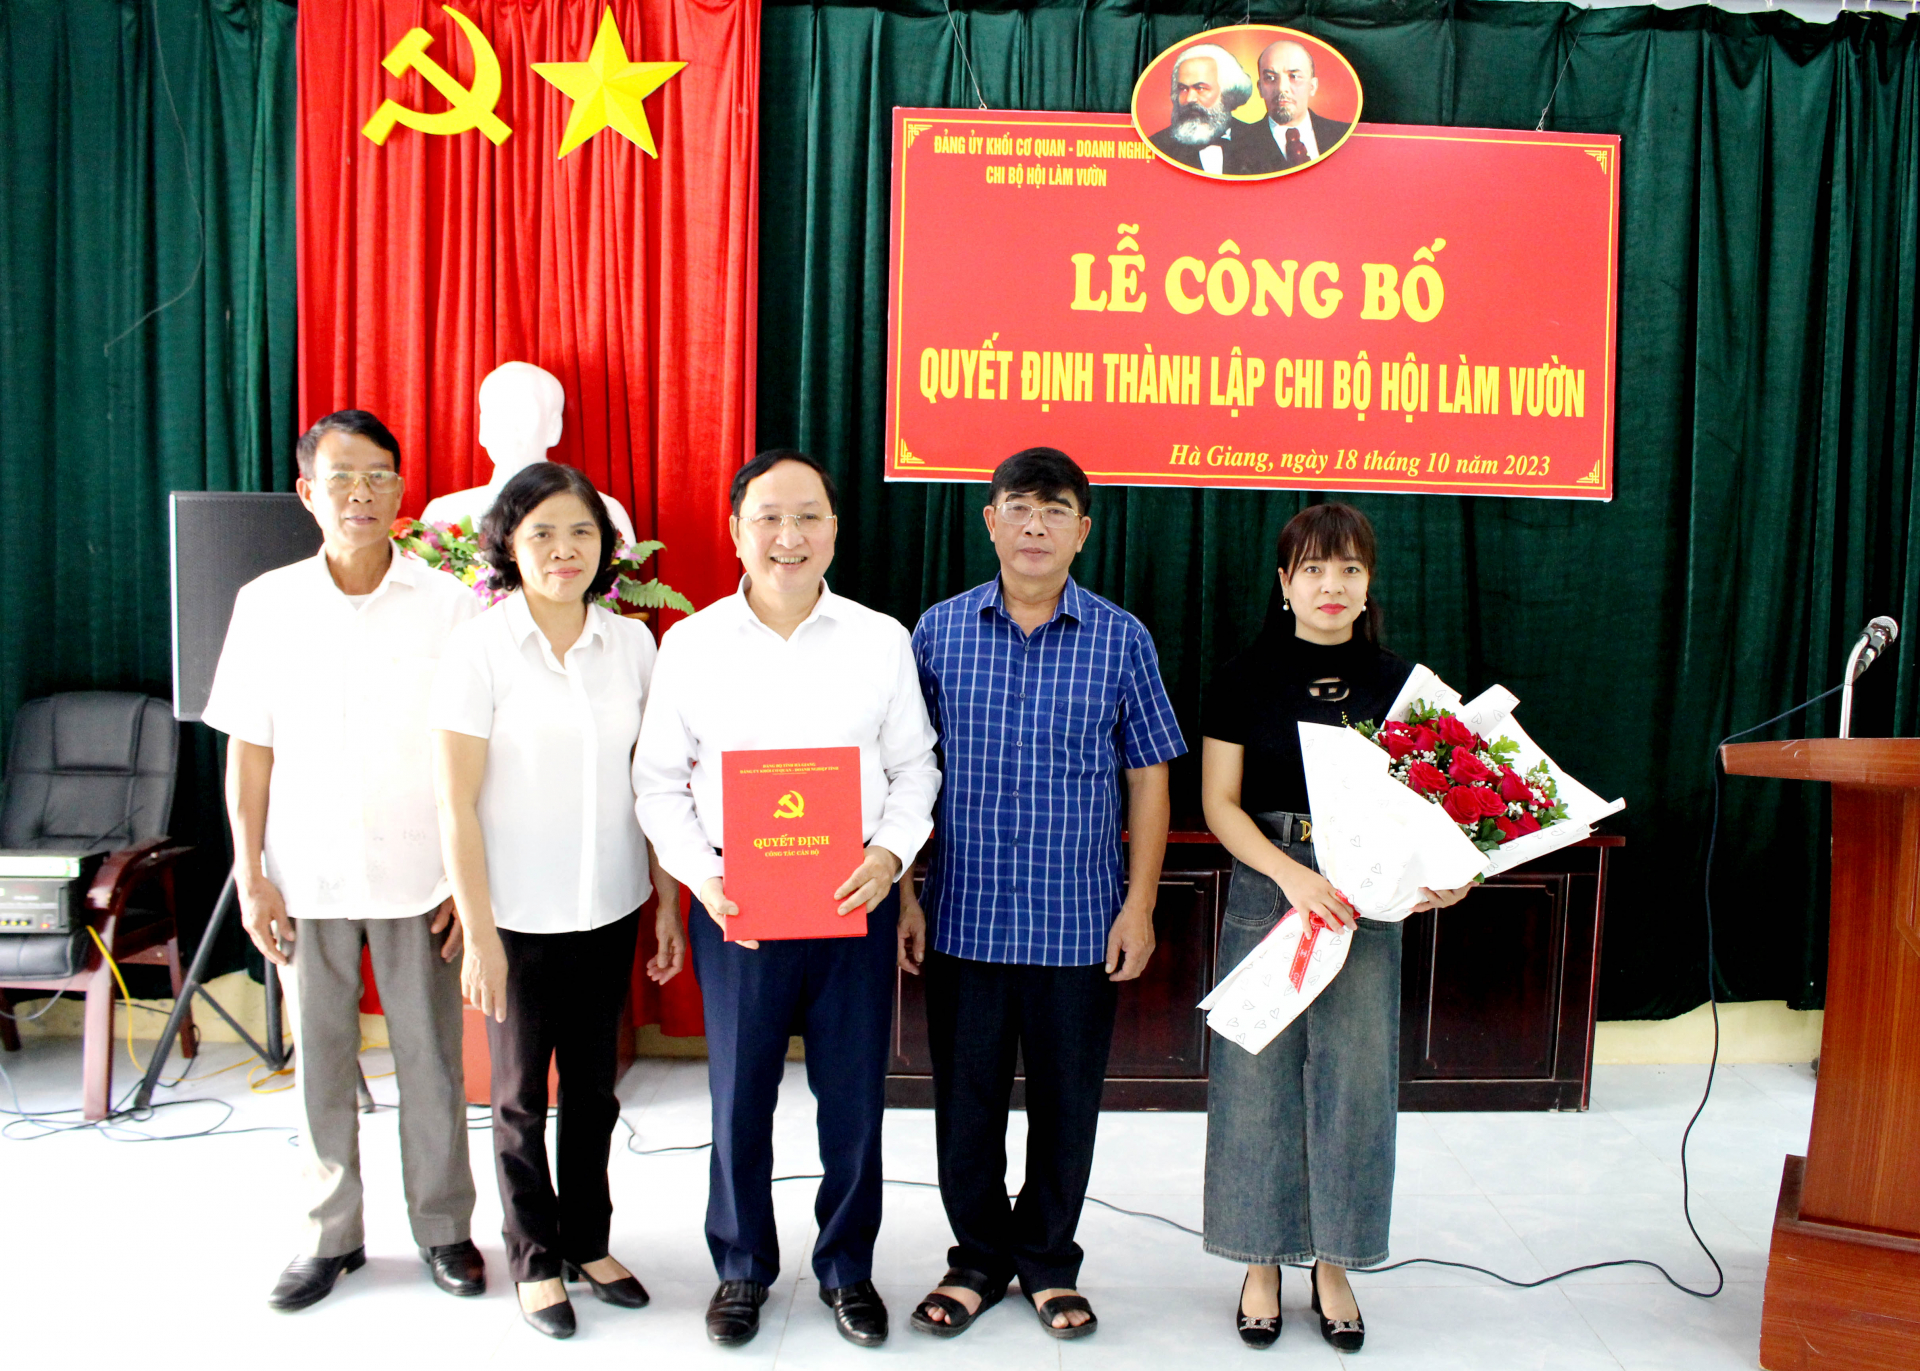 Lãnh đạo Đảng ủy Khối Cơ quan - Doanh nghiệp tỉnh trao quyết định thành lập Chi bộ Hội Làm vườn tỉnh.